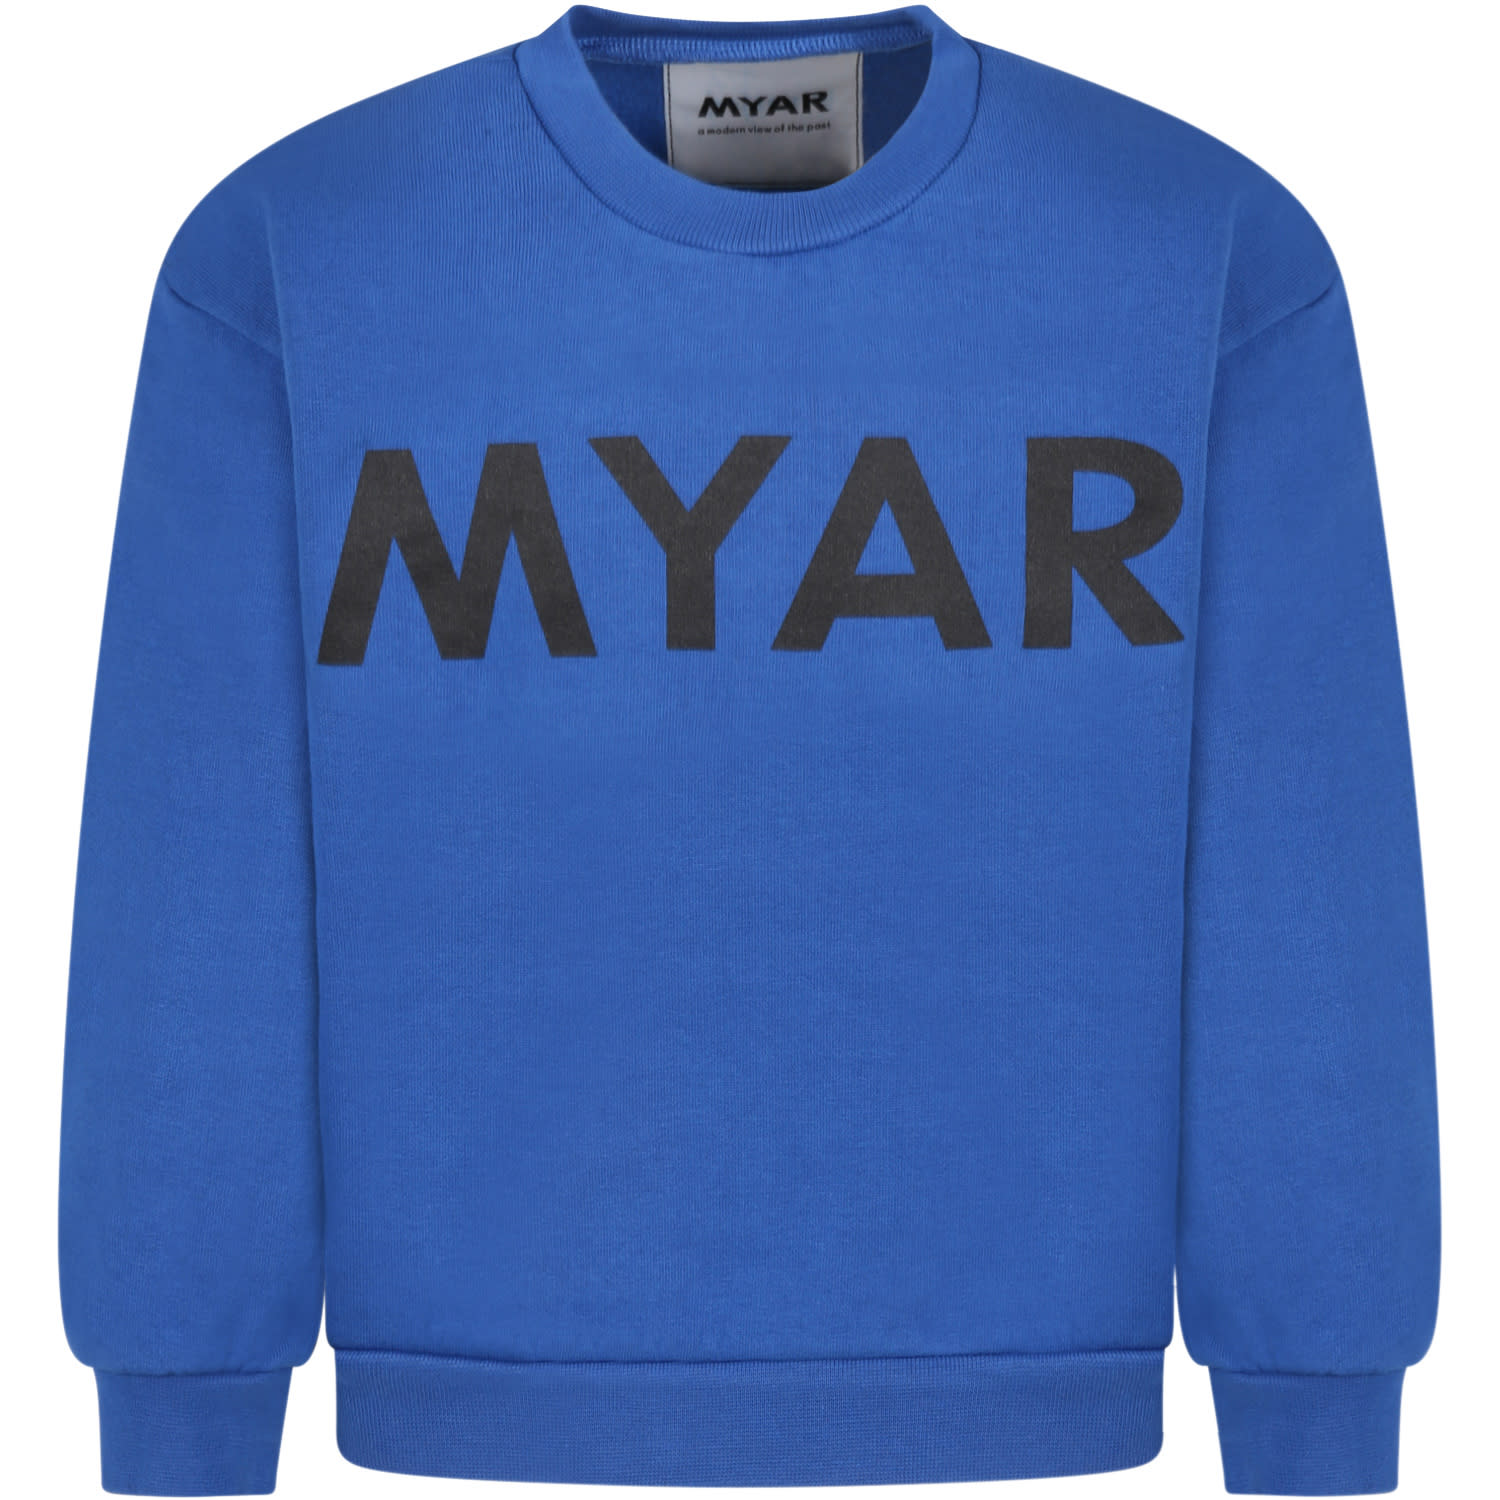 MYAR Blue Sweatshirt For Boy With Logo